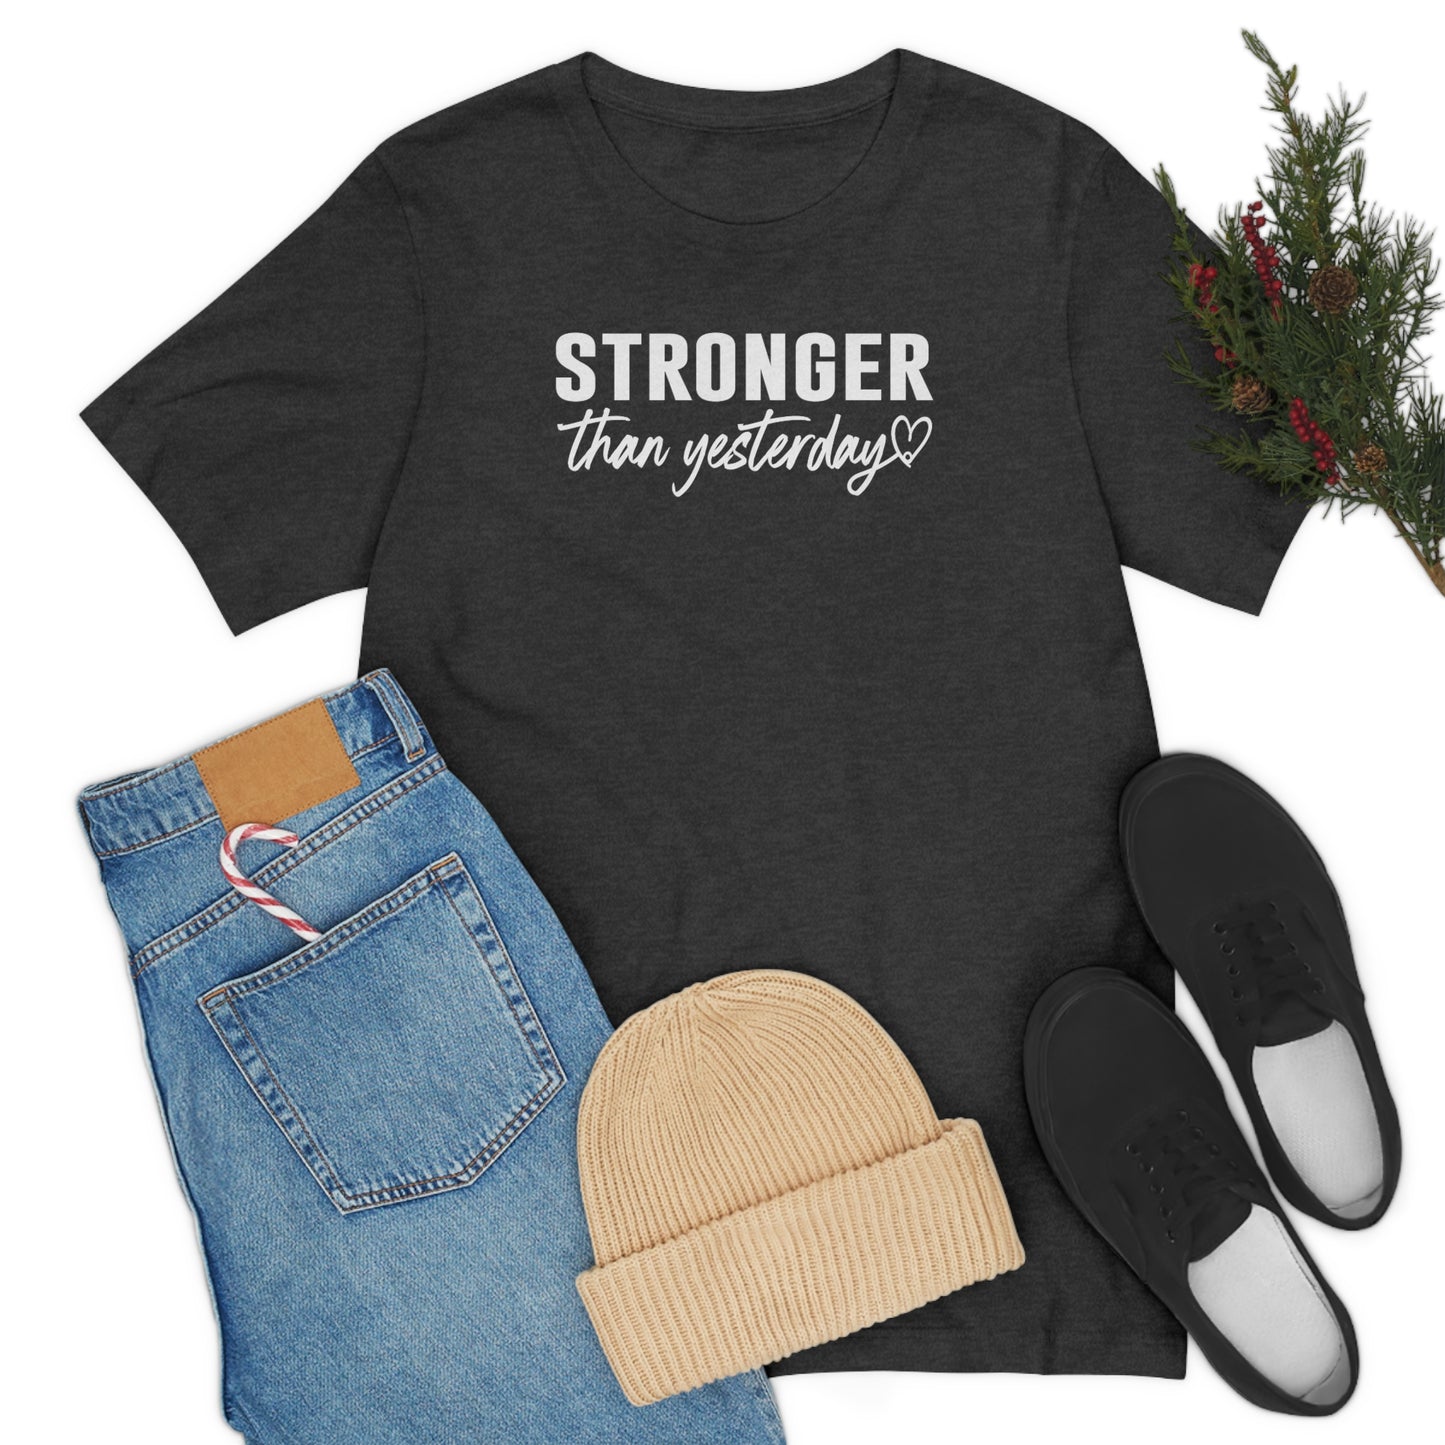 Stronger Than Yesterday Shirt, Inspirational T-Shirt, Motivational Shirts, Faith Shirt, Positive Shirt, Tee Shirt, Self Love Shirt